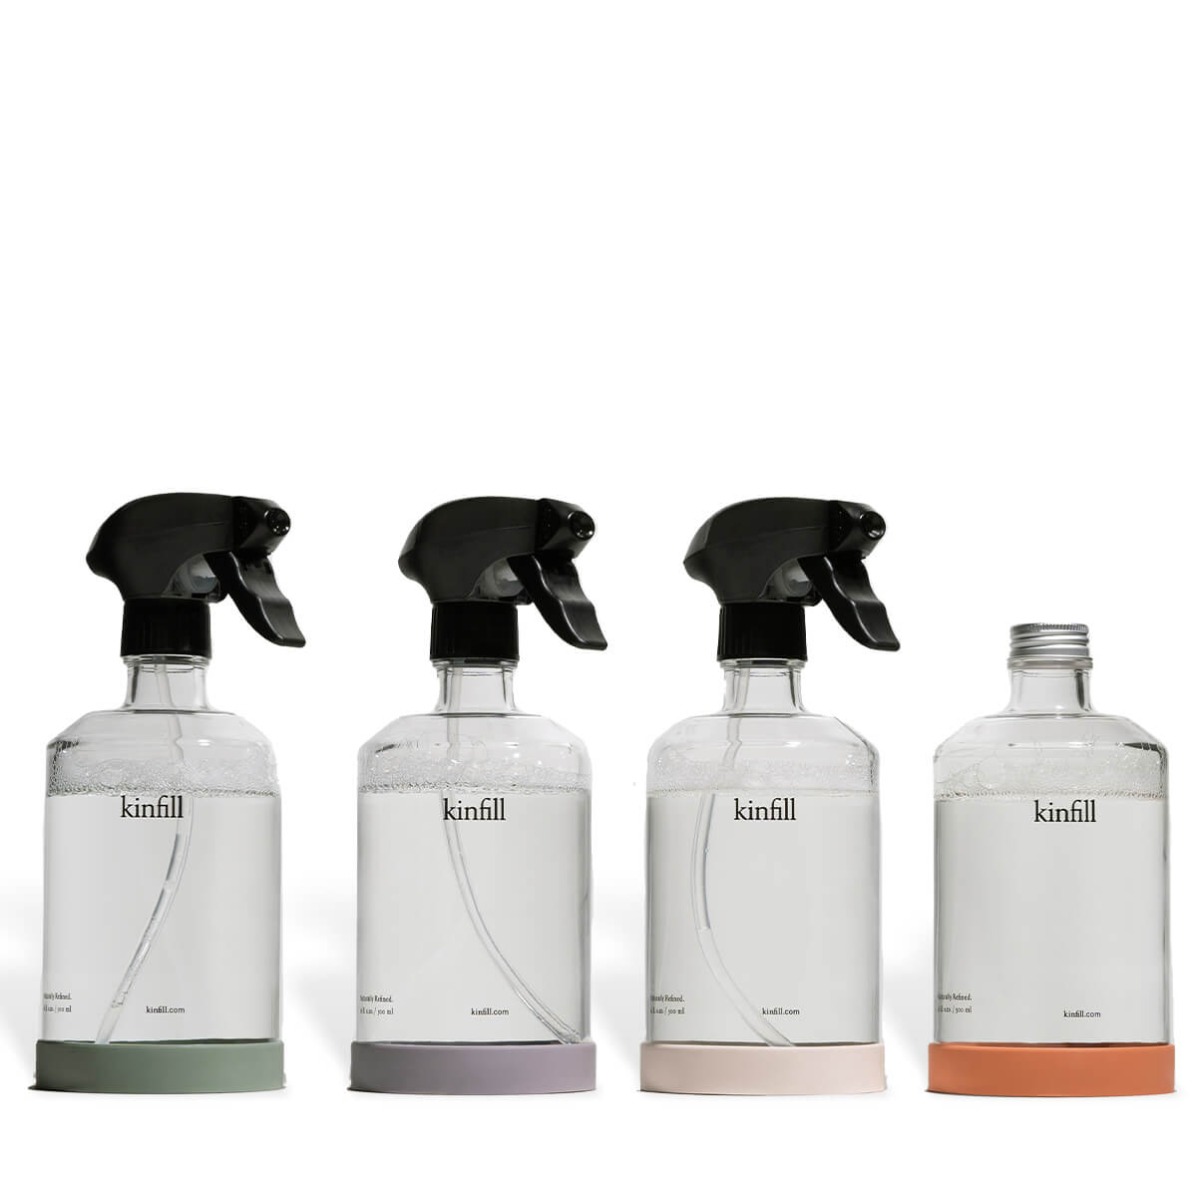 Kinfill – Full house starter kit set of 4 cleaners